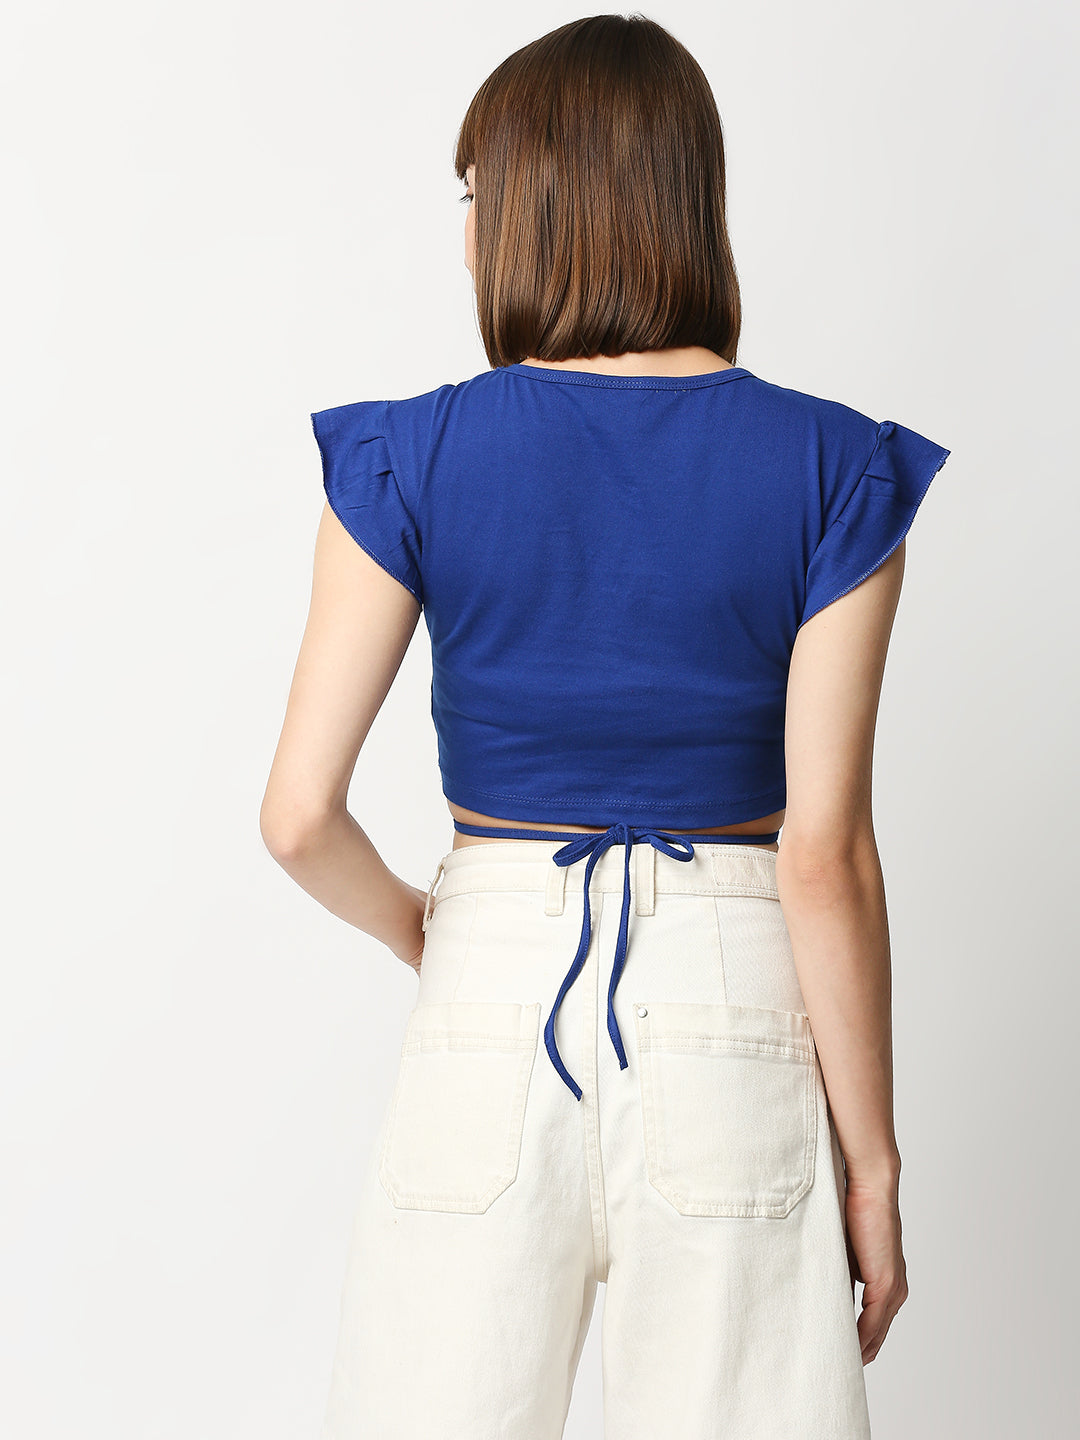 Buy BLAMBLACK Women V Neck Crop Top Royal Blue Color Solid Half sleeves